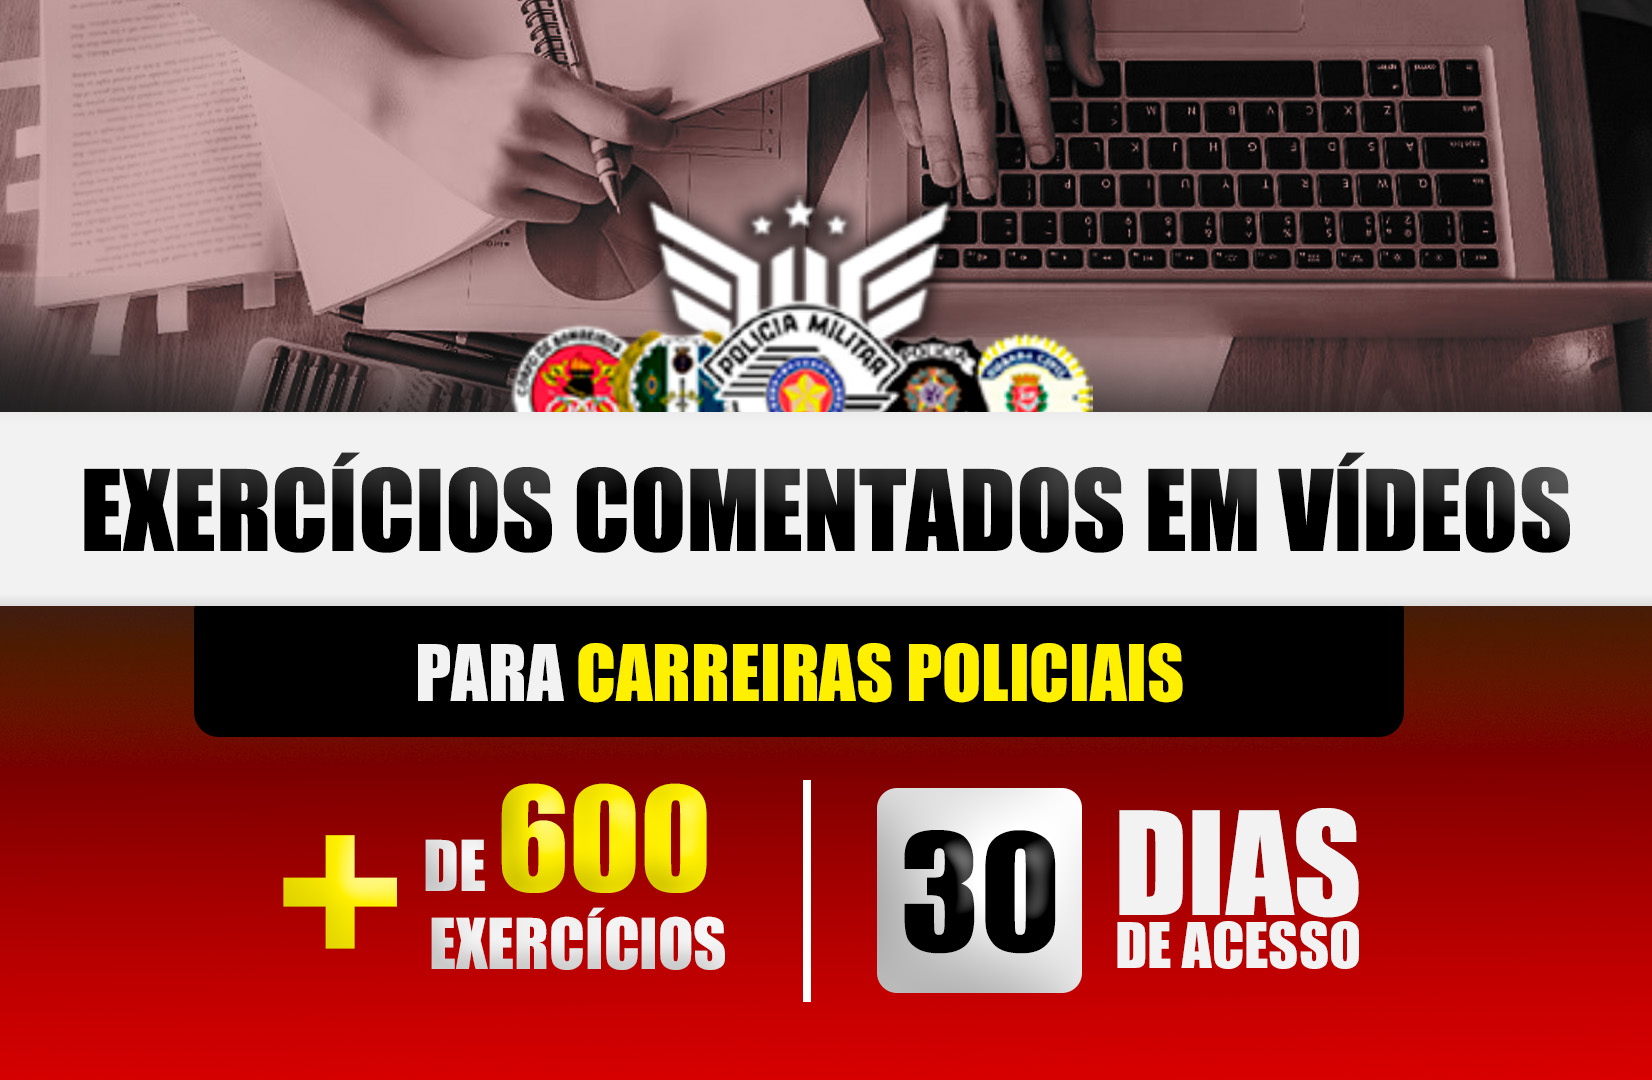 Exercícios Comentados em Vídeos l +600 EXERCÍCIOS - 30 DIAS DE ACESSO